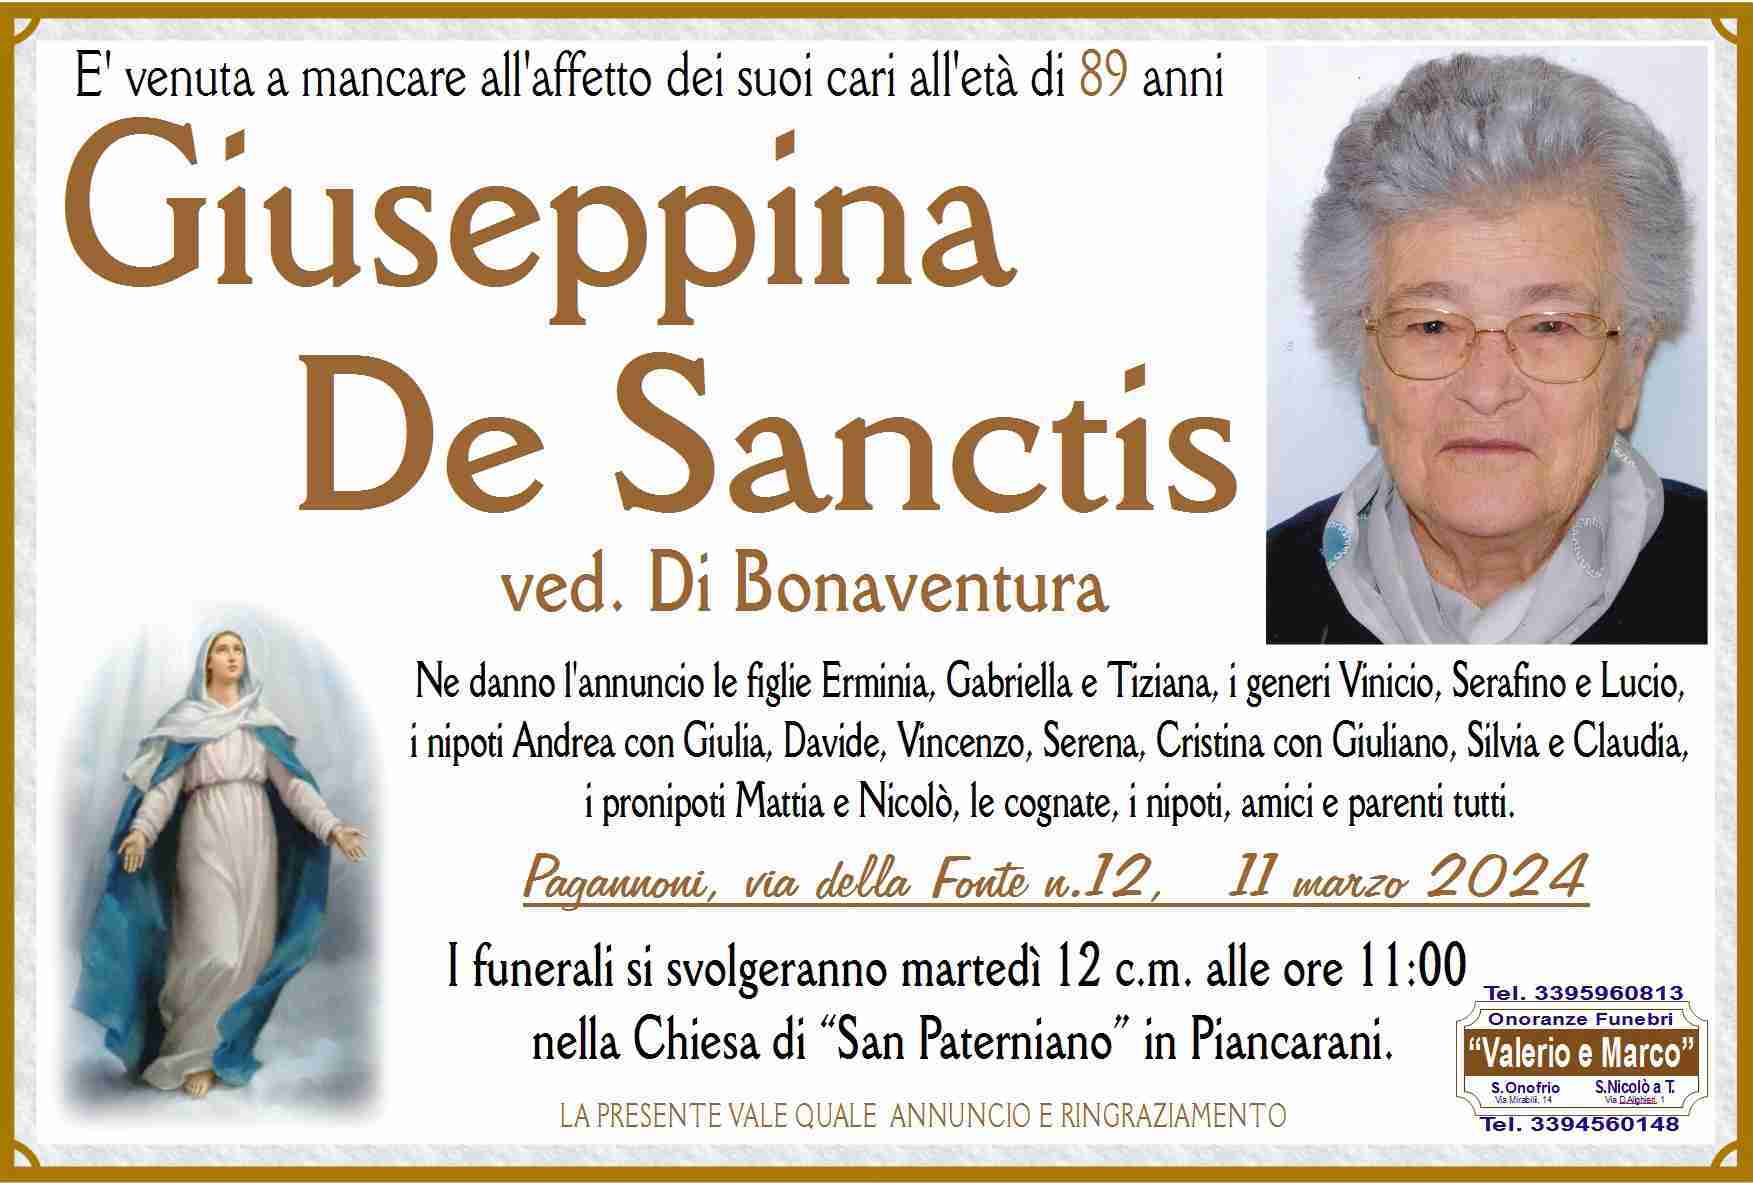 Giuseppina De Sanctis